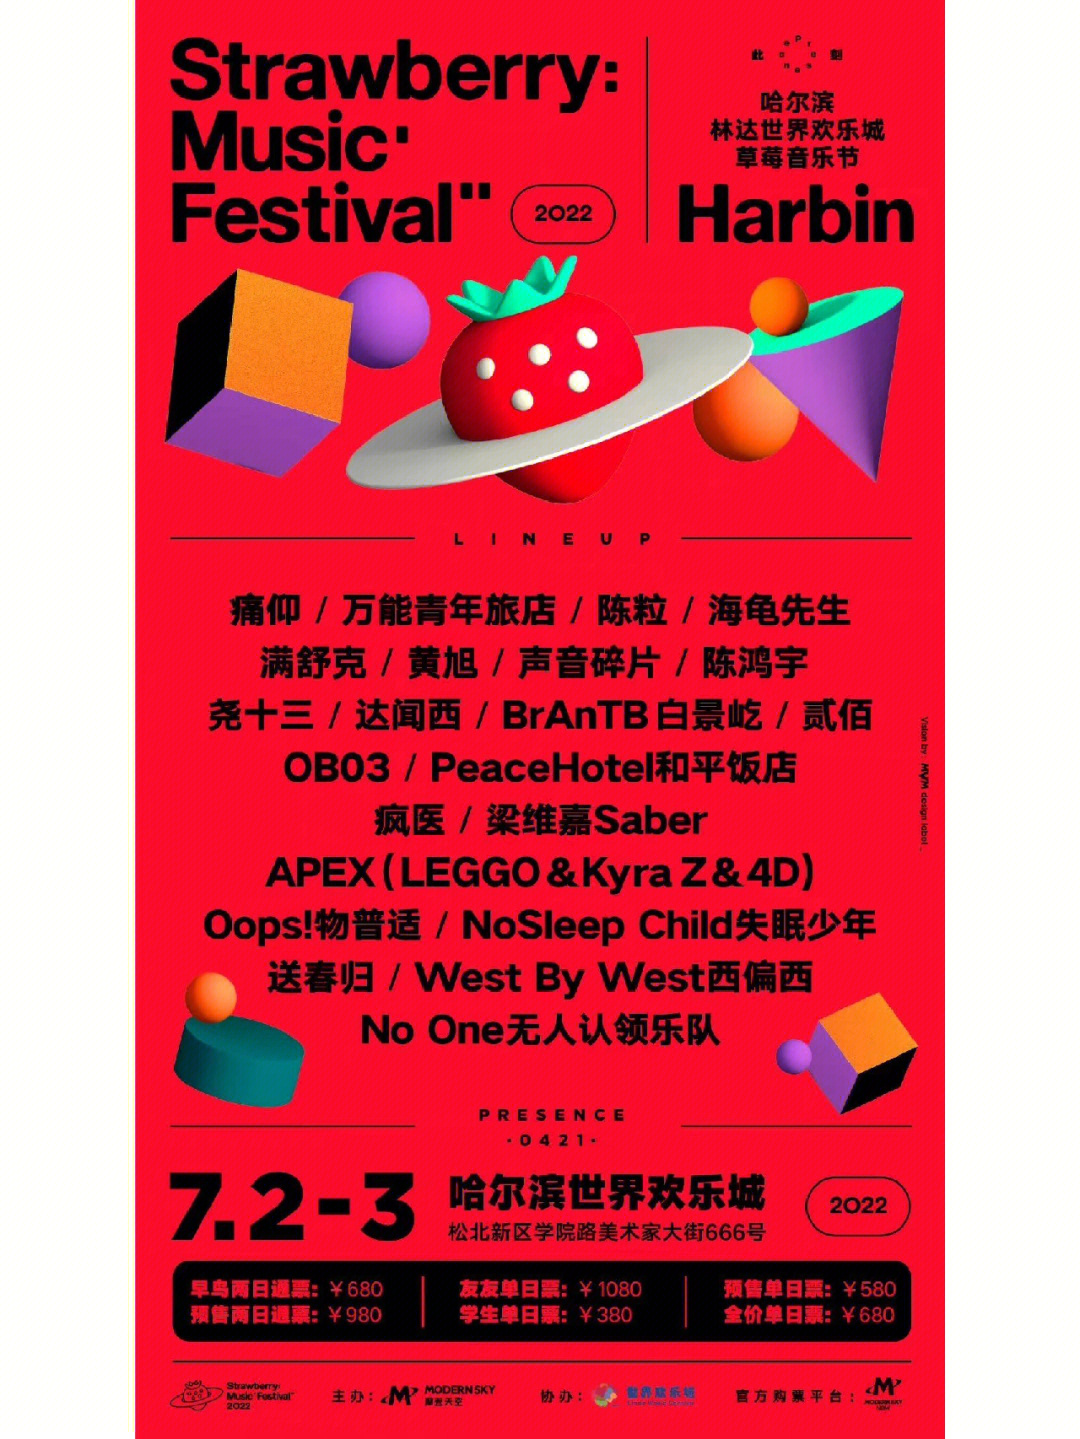 2022哈尔滨草莓音乐节无限期待